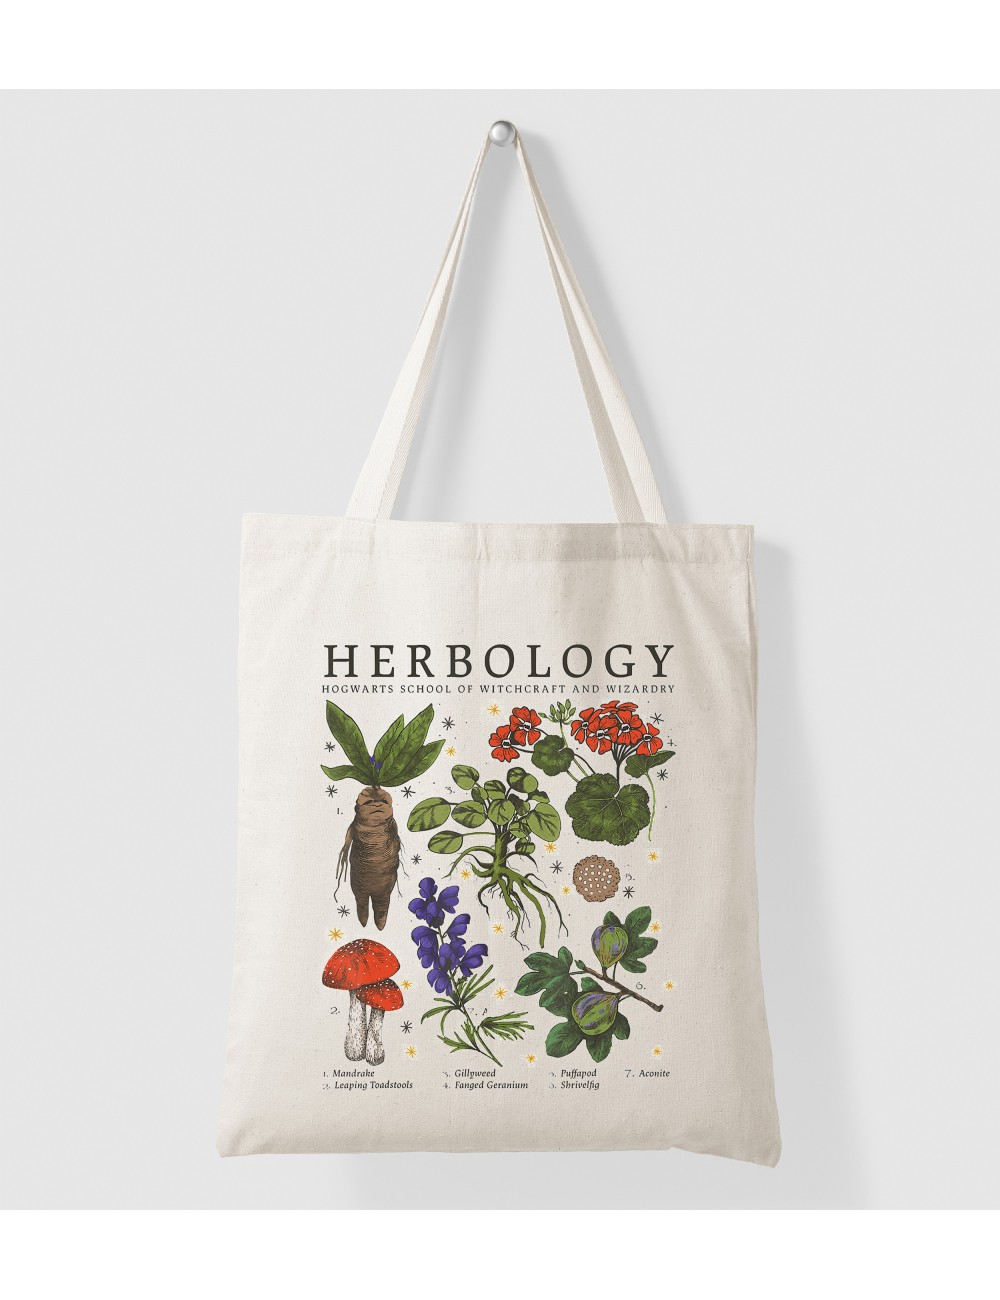 Tote Bag Sac en coton personnalisable - Enfant crèche école - personnalisé - Herbology Herbologie 